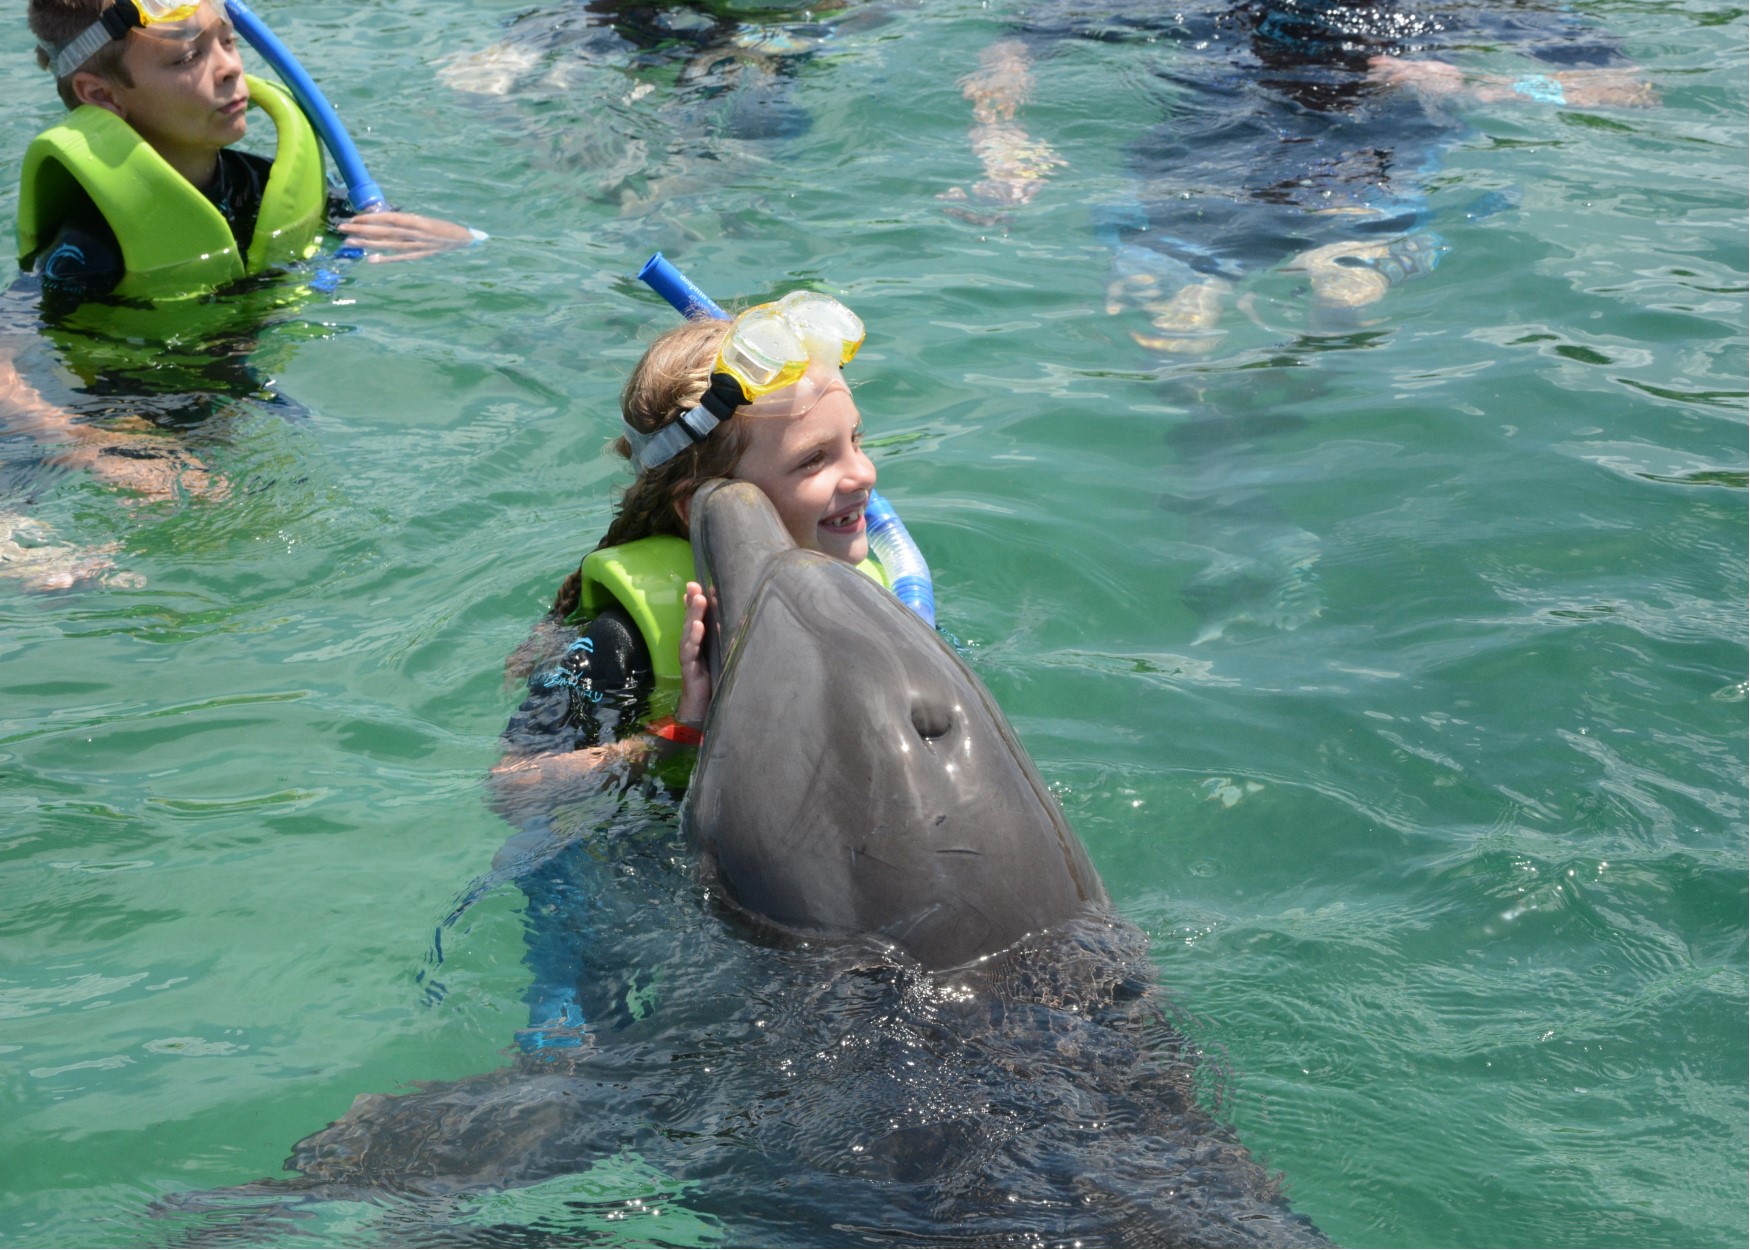 hallie dolphin kiss.jpg